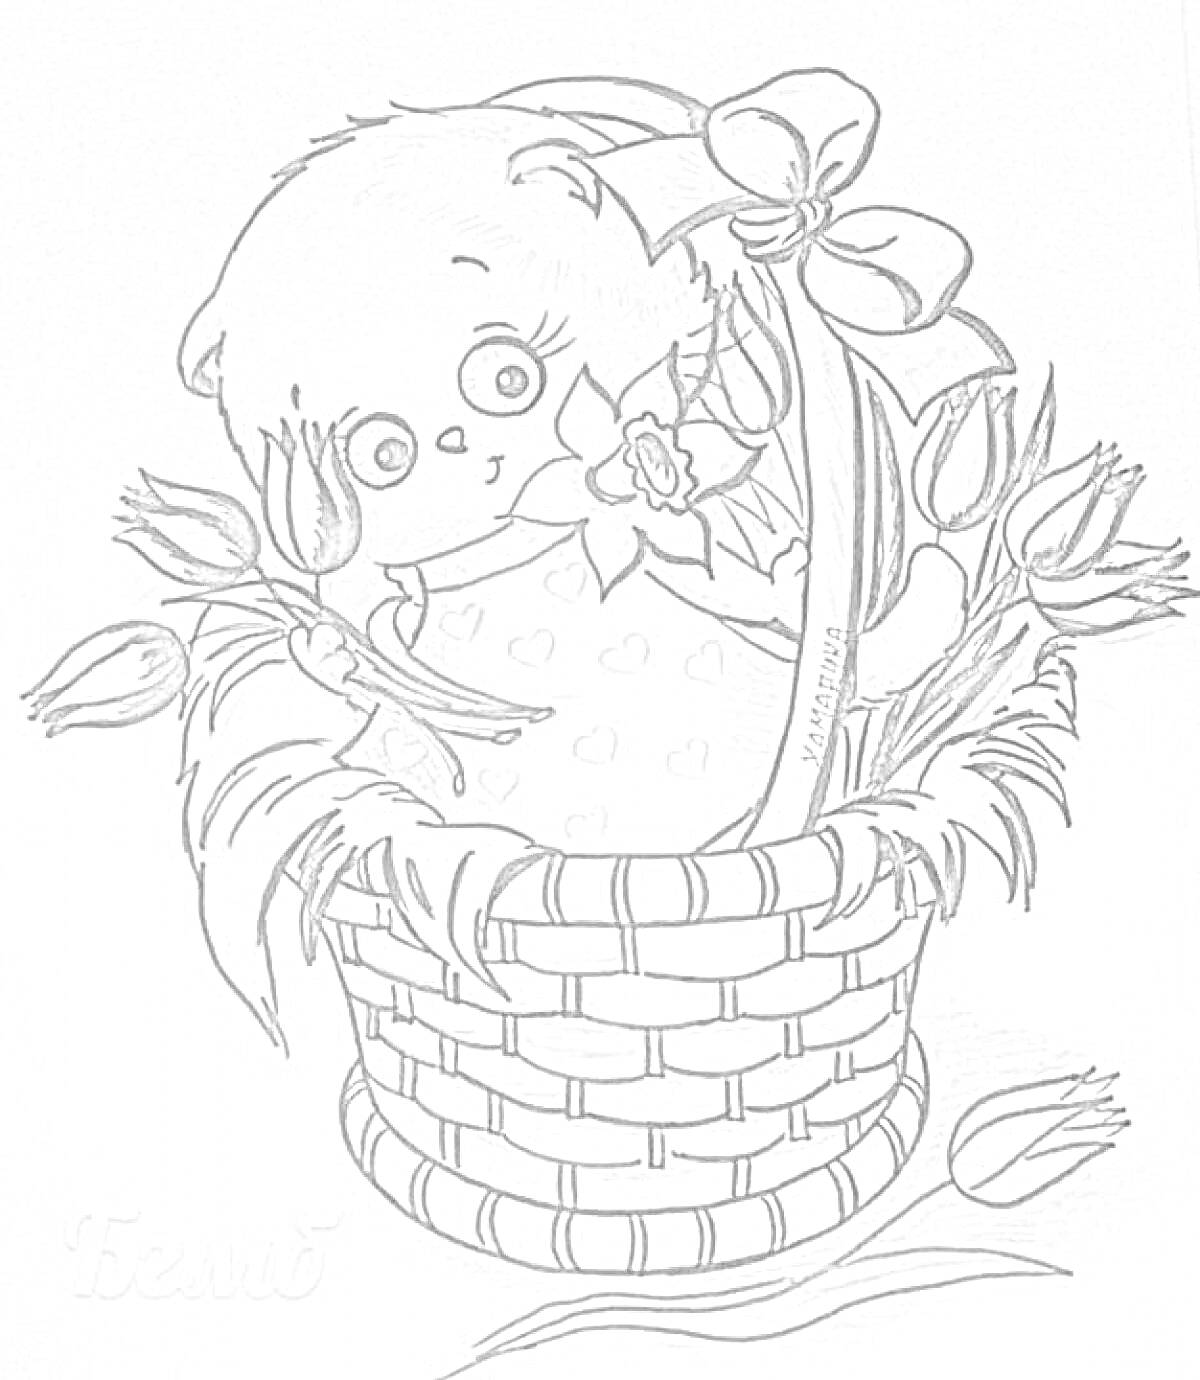 Котенок Басик в корзинке с цветами и бантиками